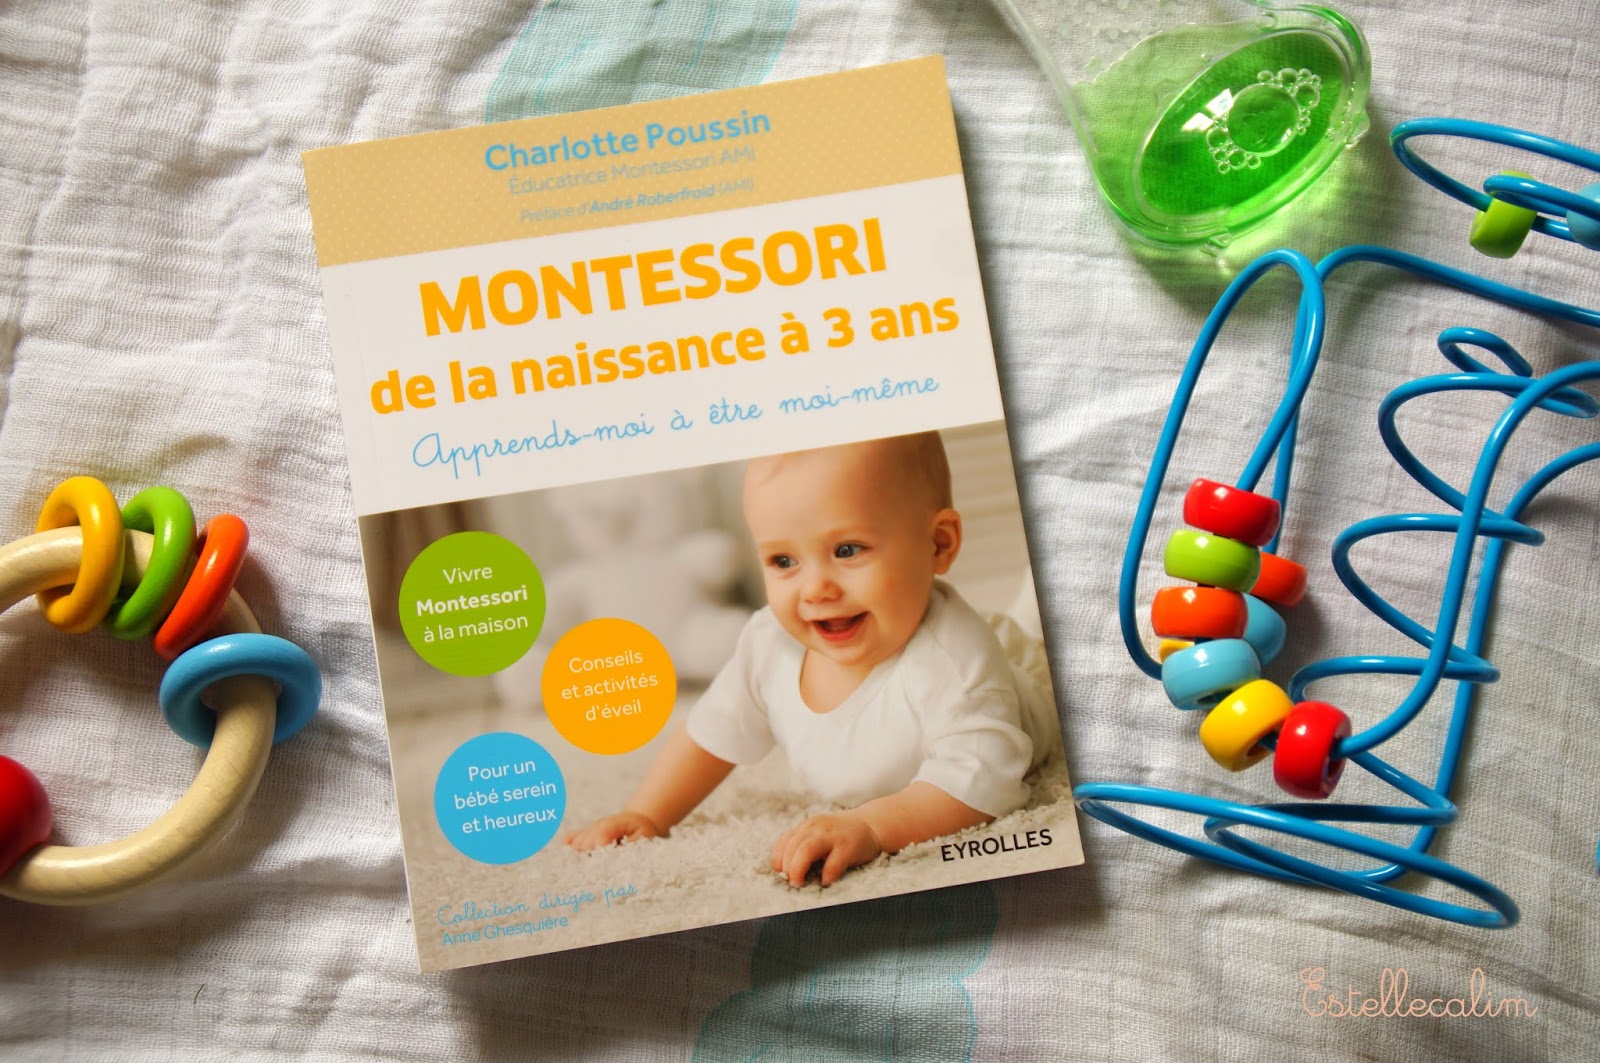 Montessori de 0 à 3 ans - Apprends moi à être moi même